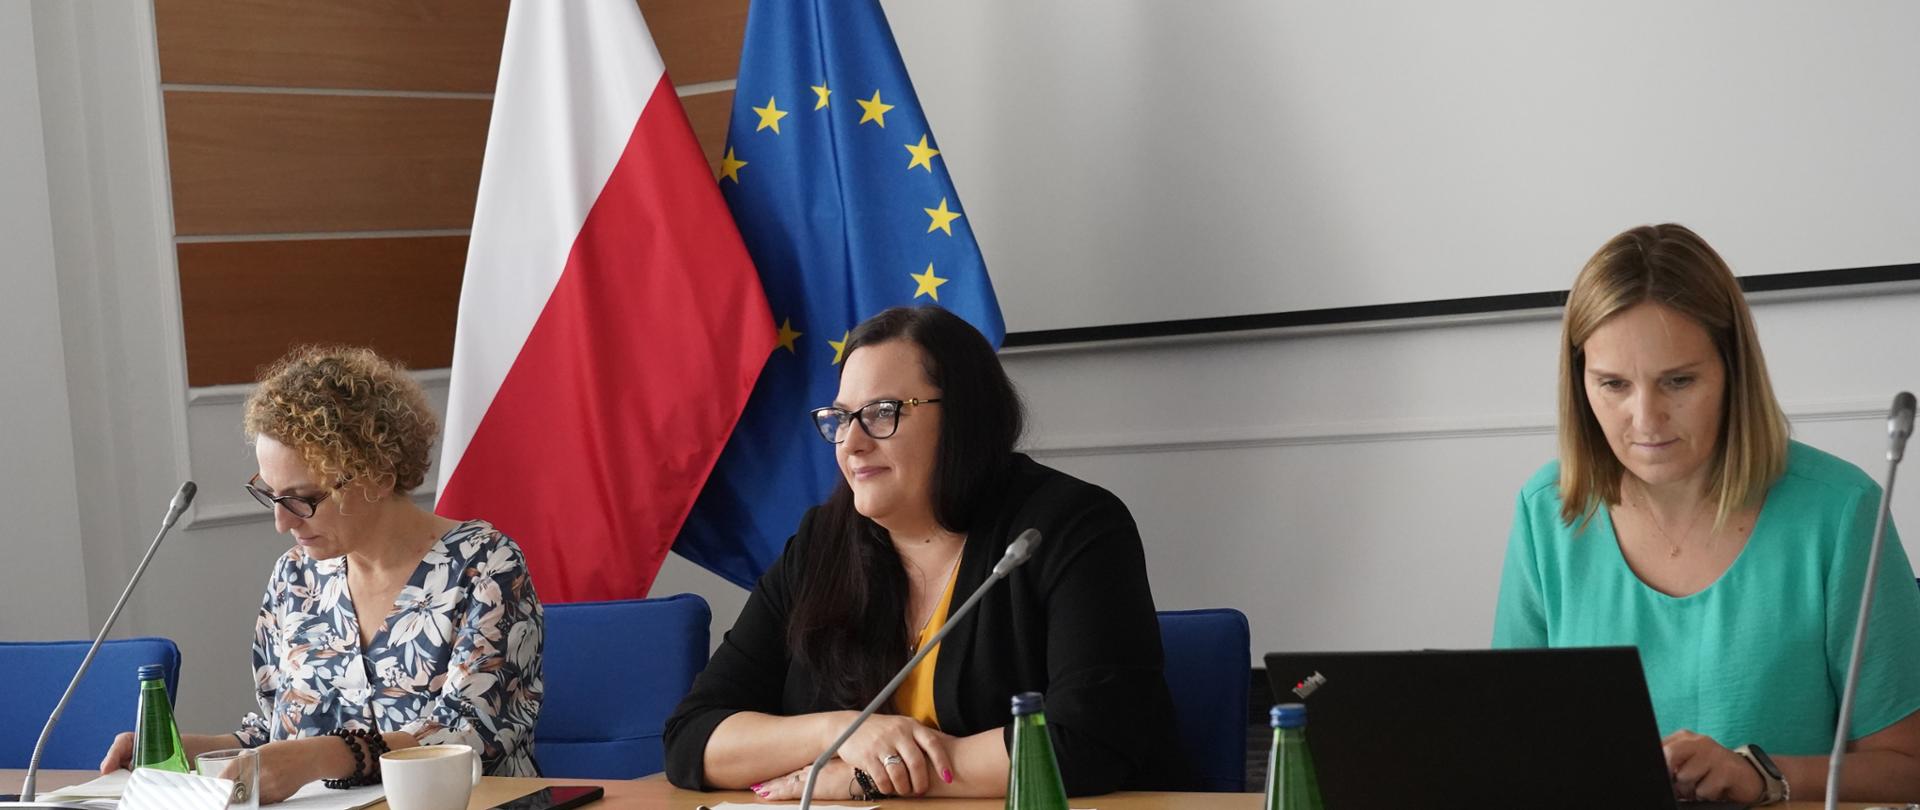 na zdjęciu trzy osoby za stołem konferencyjnym, po środku wiceminister Małgorzata Jarosińska-Jedynak, na drugim planie biały ekran, flaga Polski i Unii Europejskiej